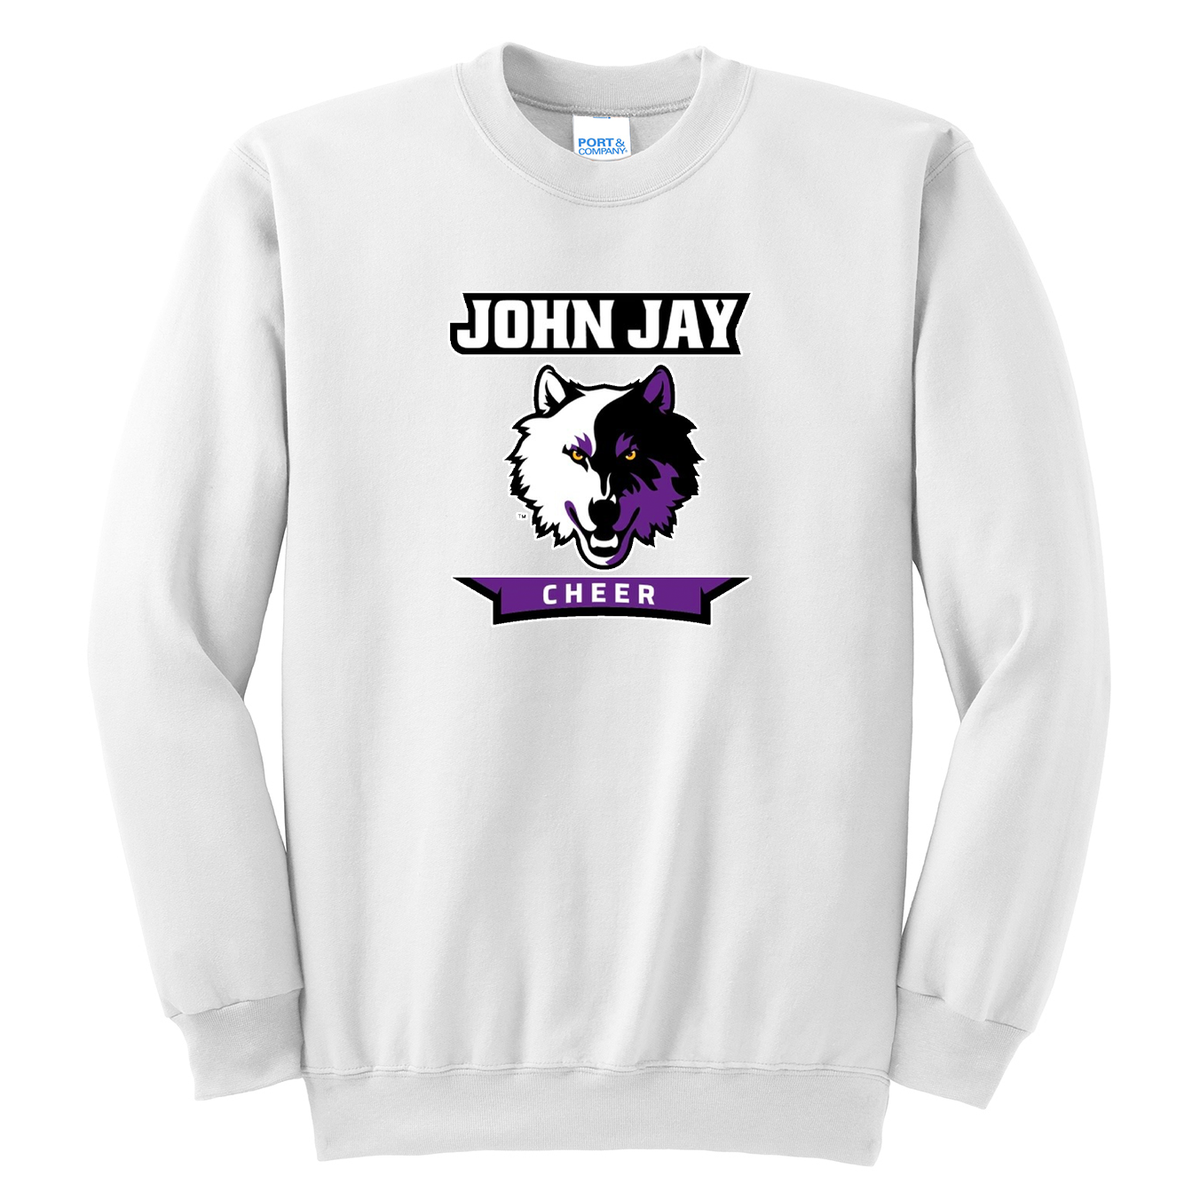 John Jay Youth Cheer Crew Neck Sweater